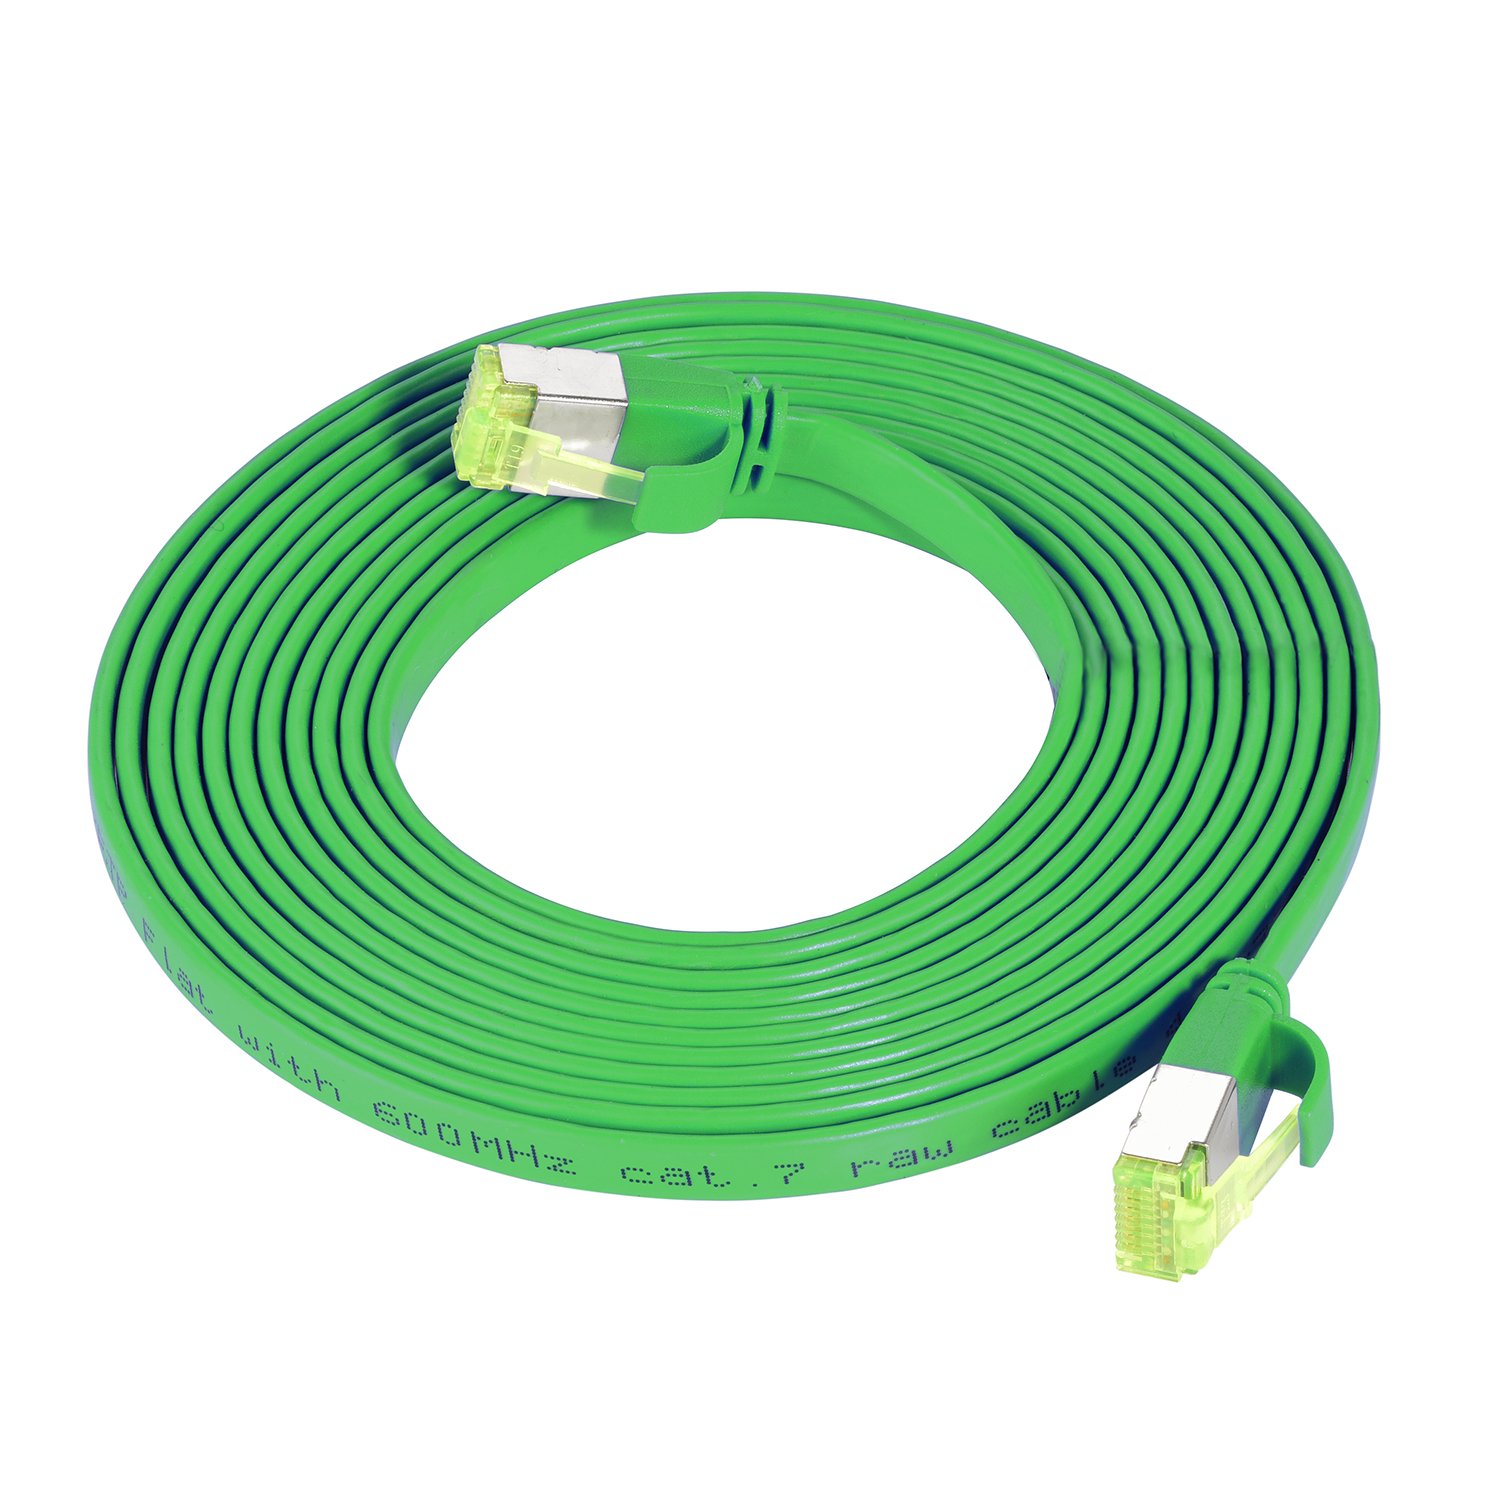 m GBit, Flachkabel Patchkabel 0,25m U/FTP 10 grün, / 0,25 TPFNET Netzwerkkabel,